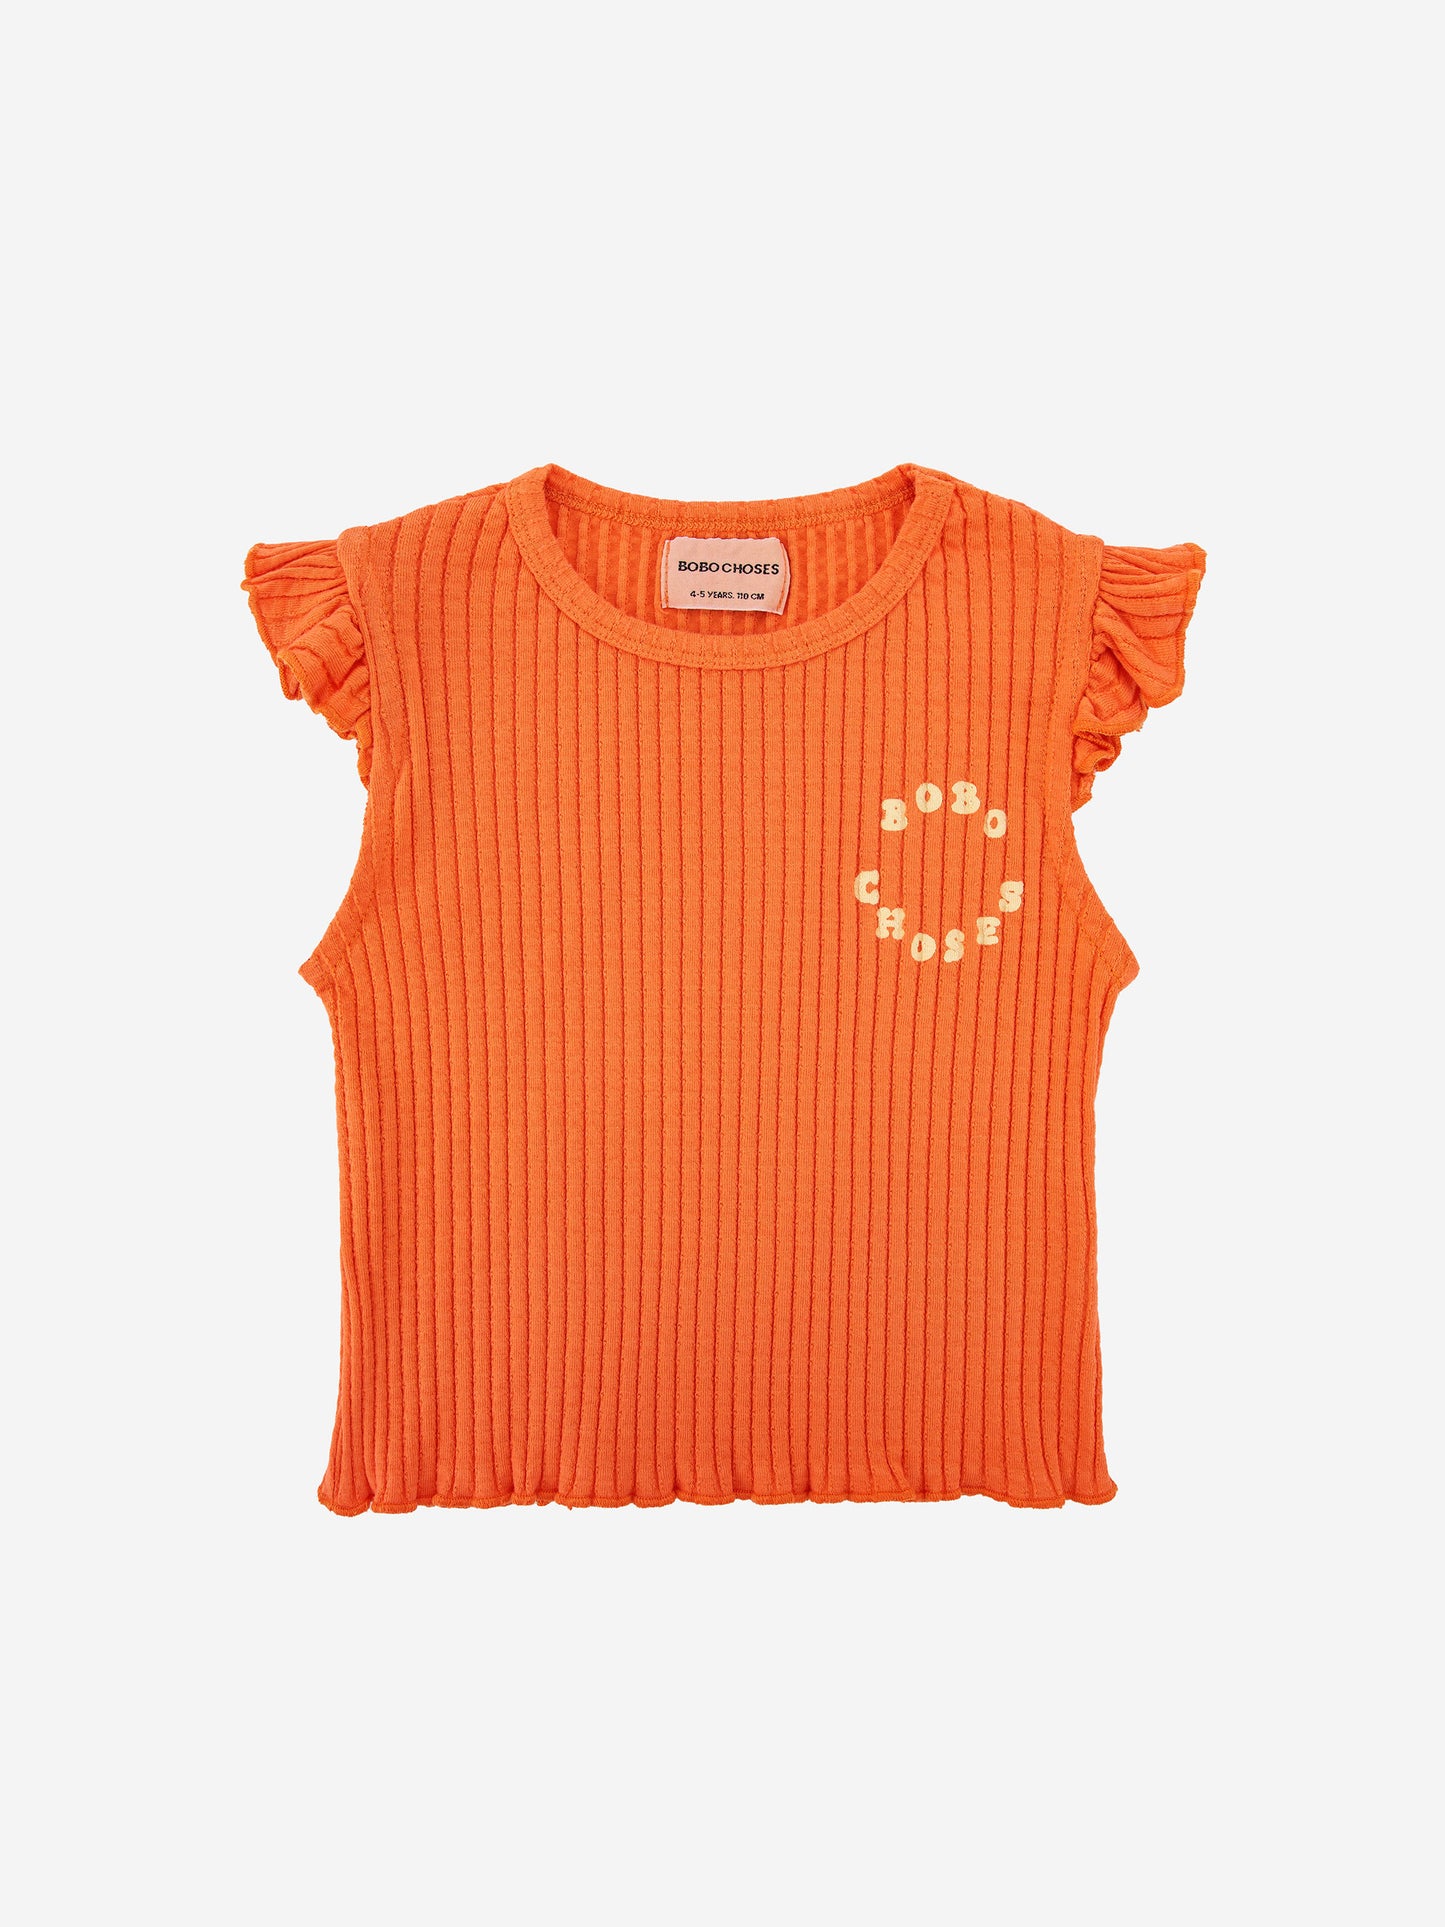 주름 장식이 있는 오렌지색 티셔츠